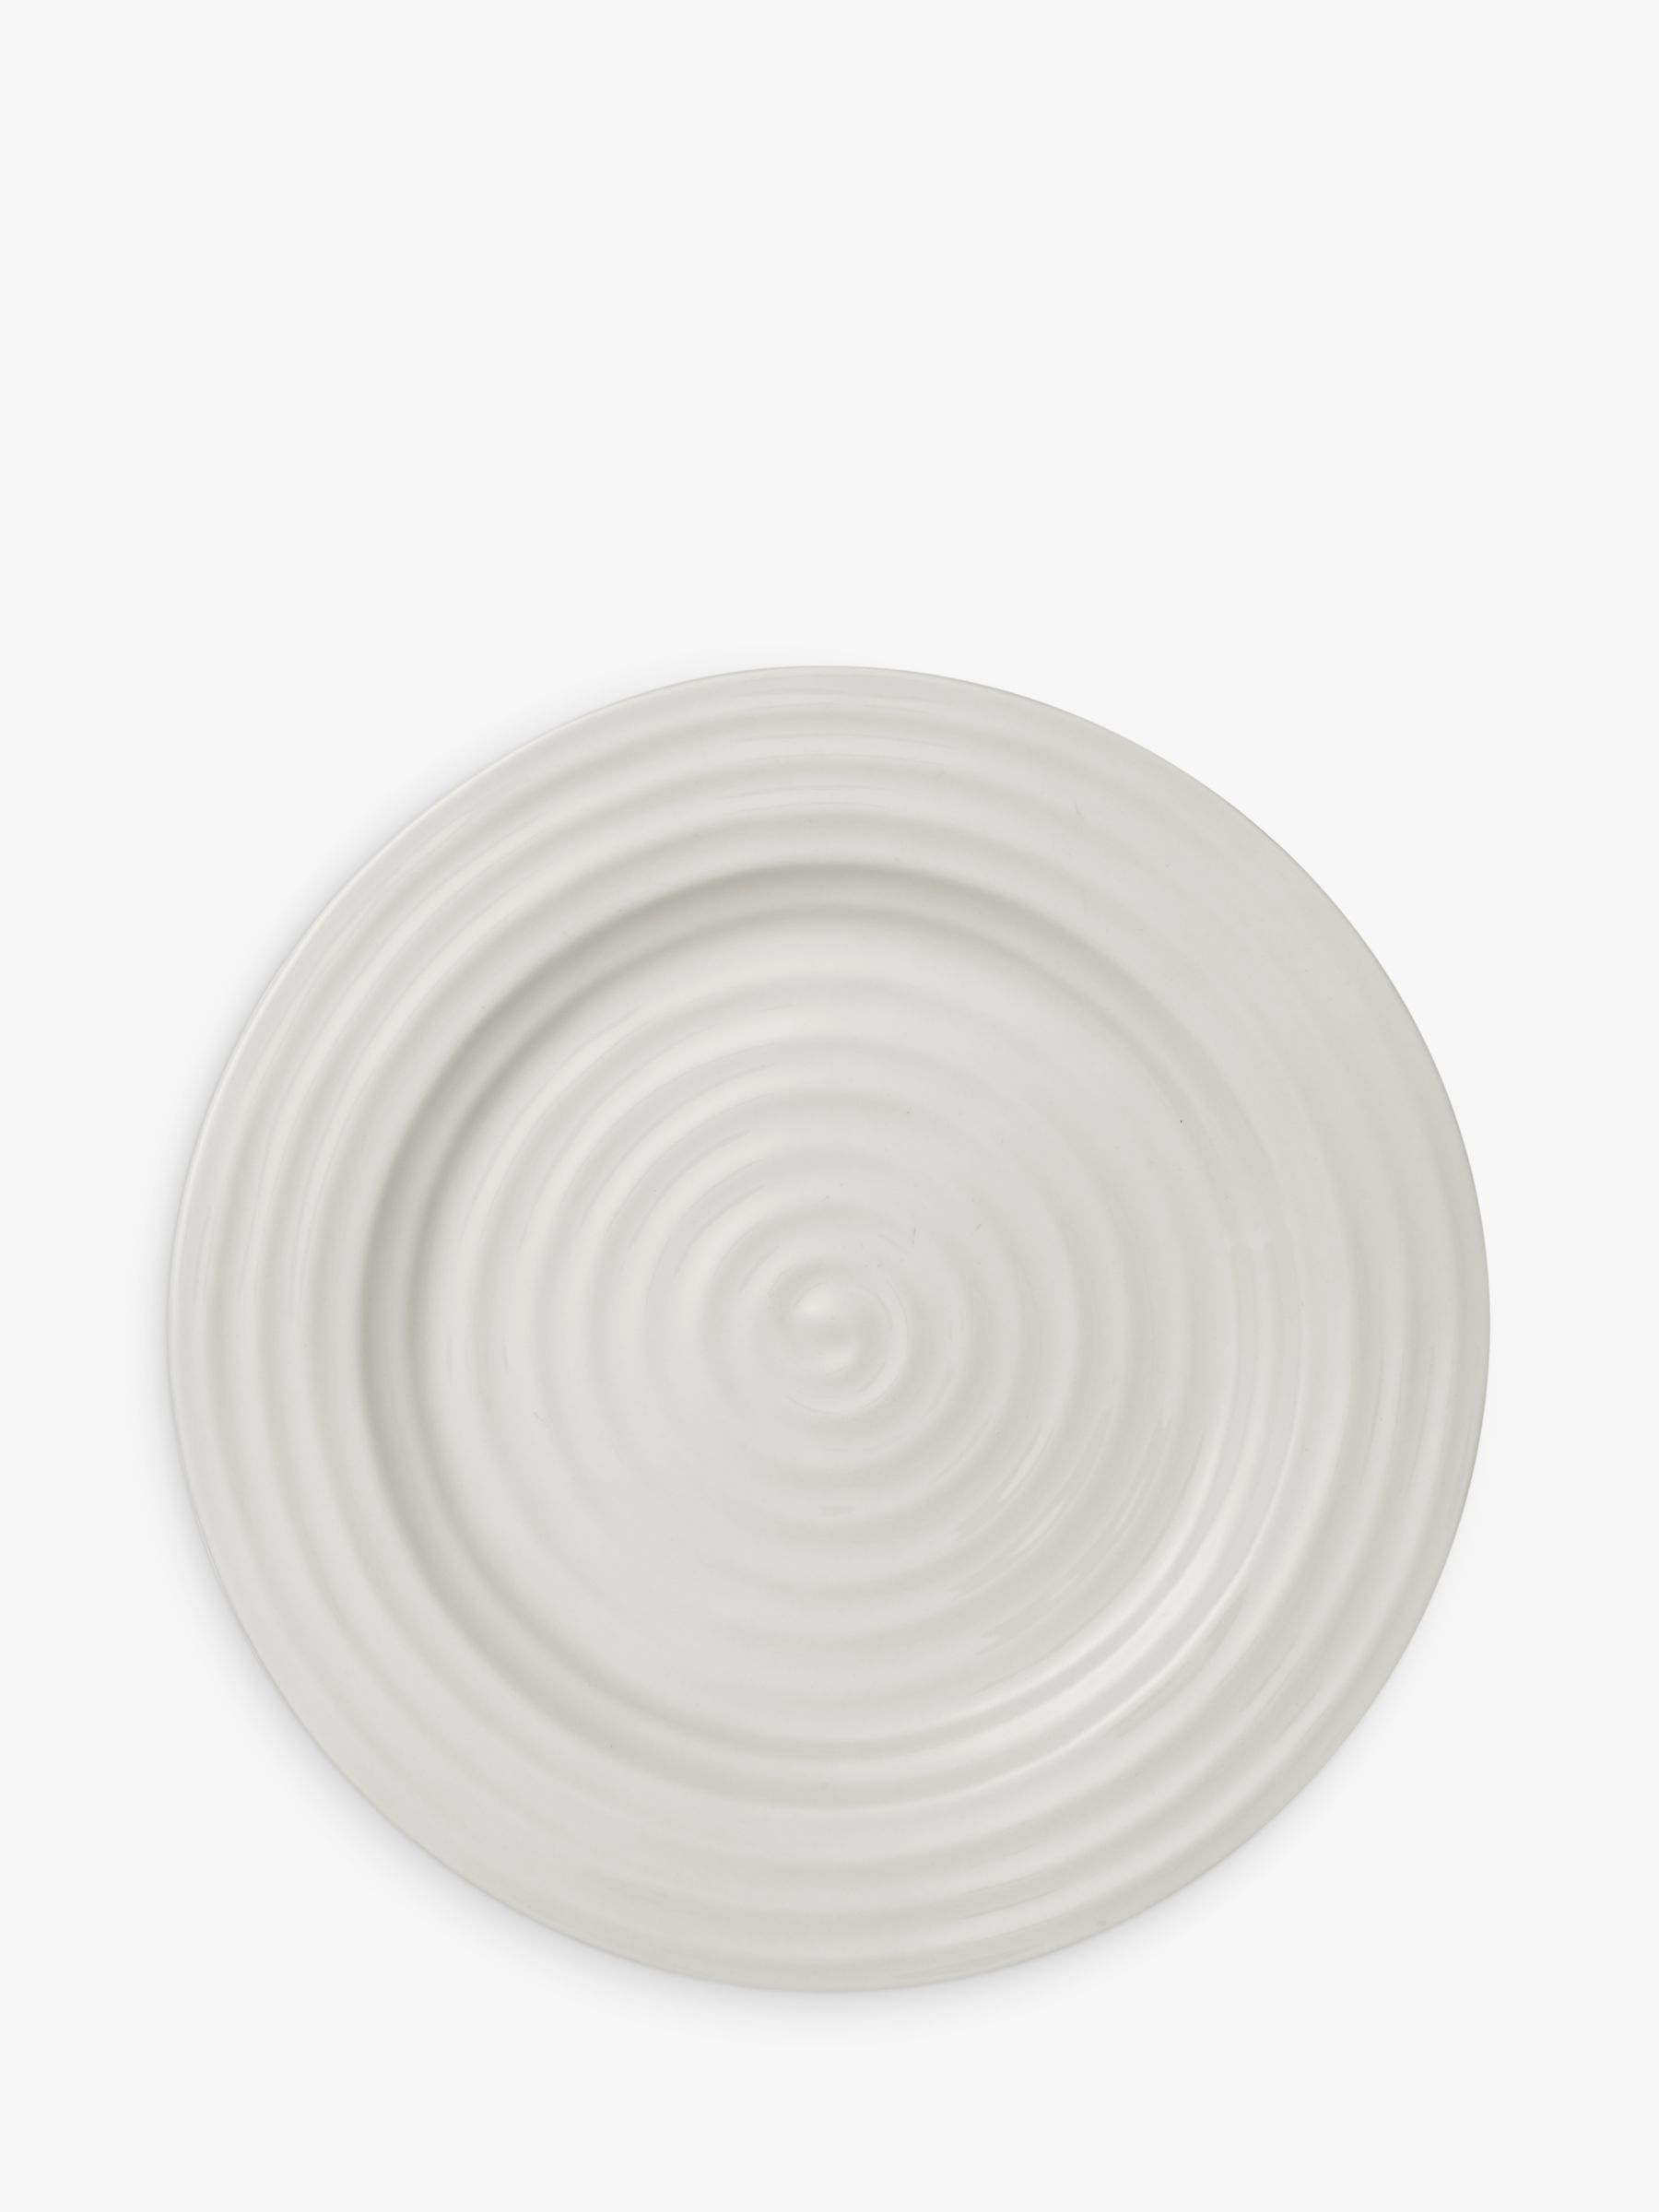 Sophie Conran for Portmeirion Dinner Plate, White, 28cm